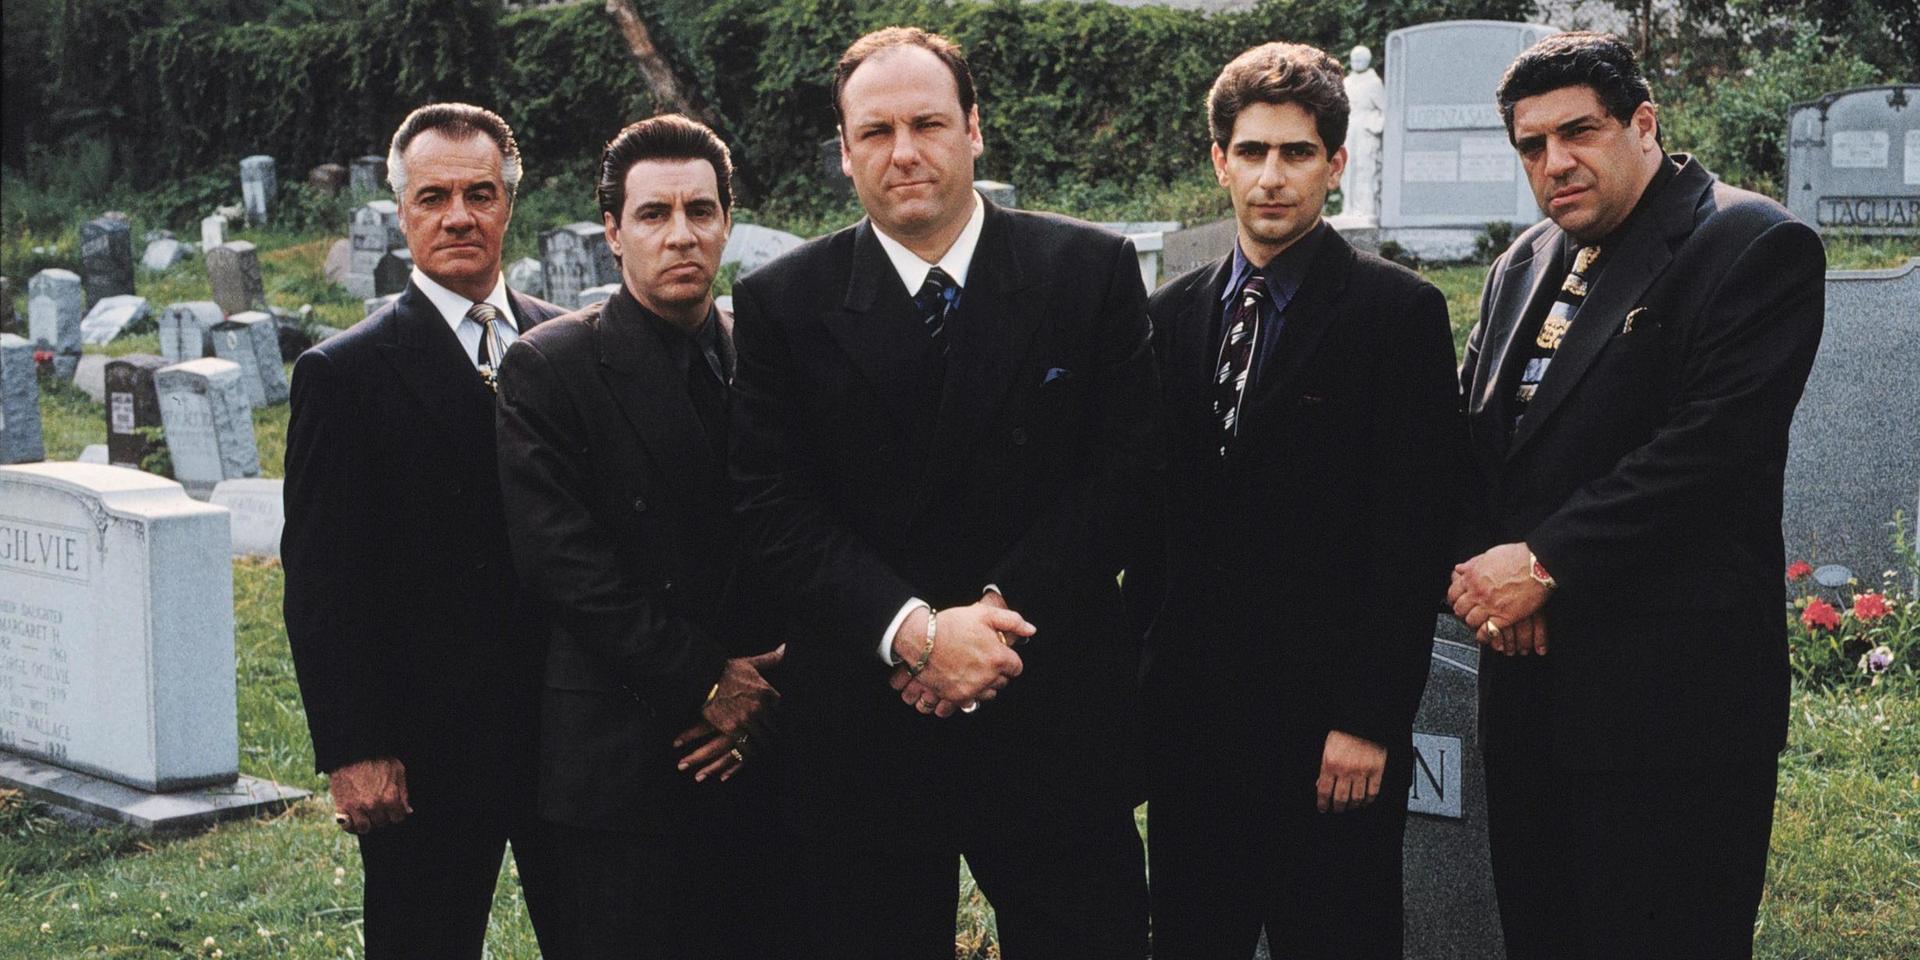 April blir en högtidsstund för alla 'The Sopranos'-fans. Då har nämligen podcasten 'Talking Sopranos', som gör en djupdykning i seriens alla avsnitt, premiär. Arkivbild.